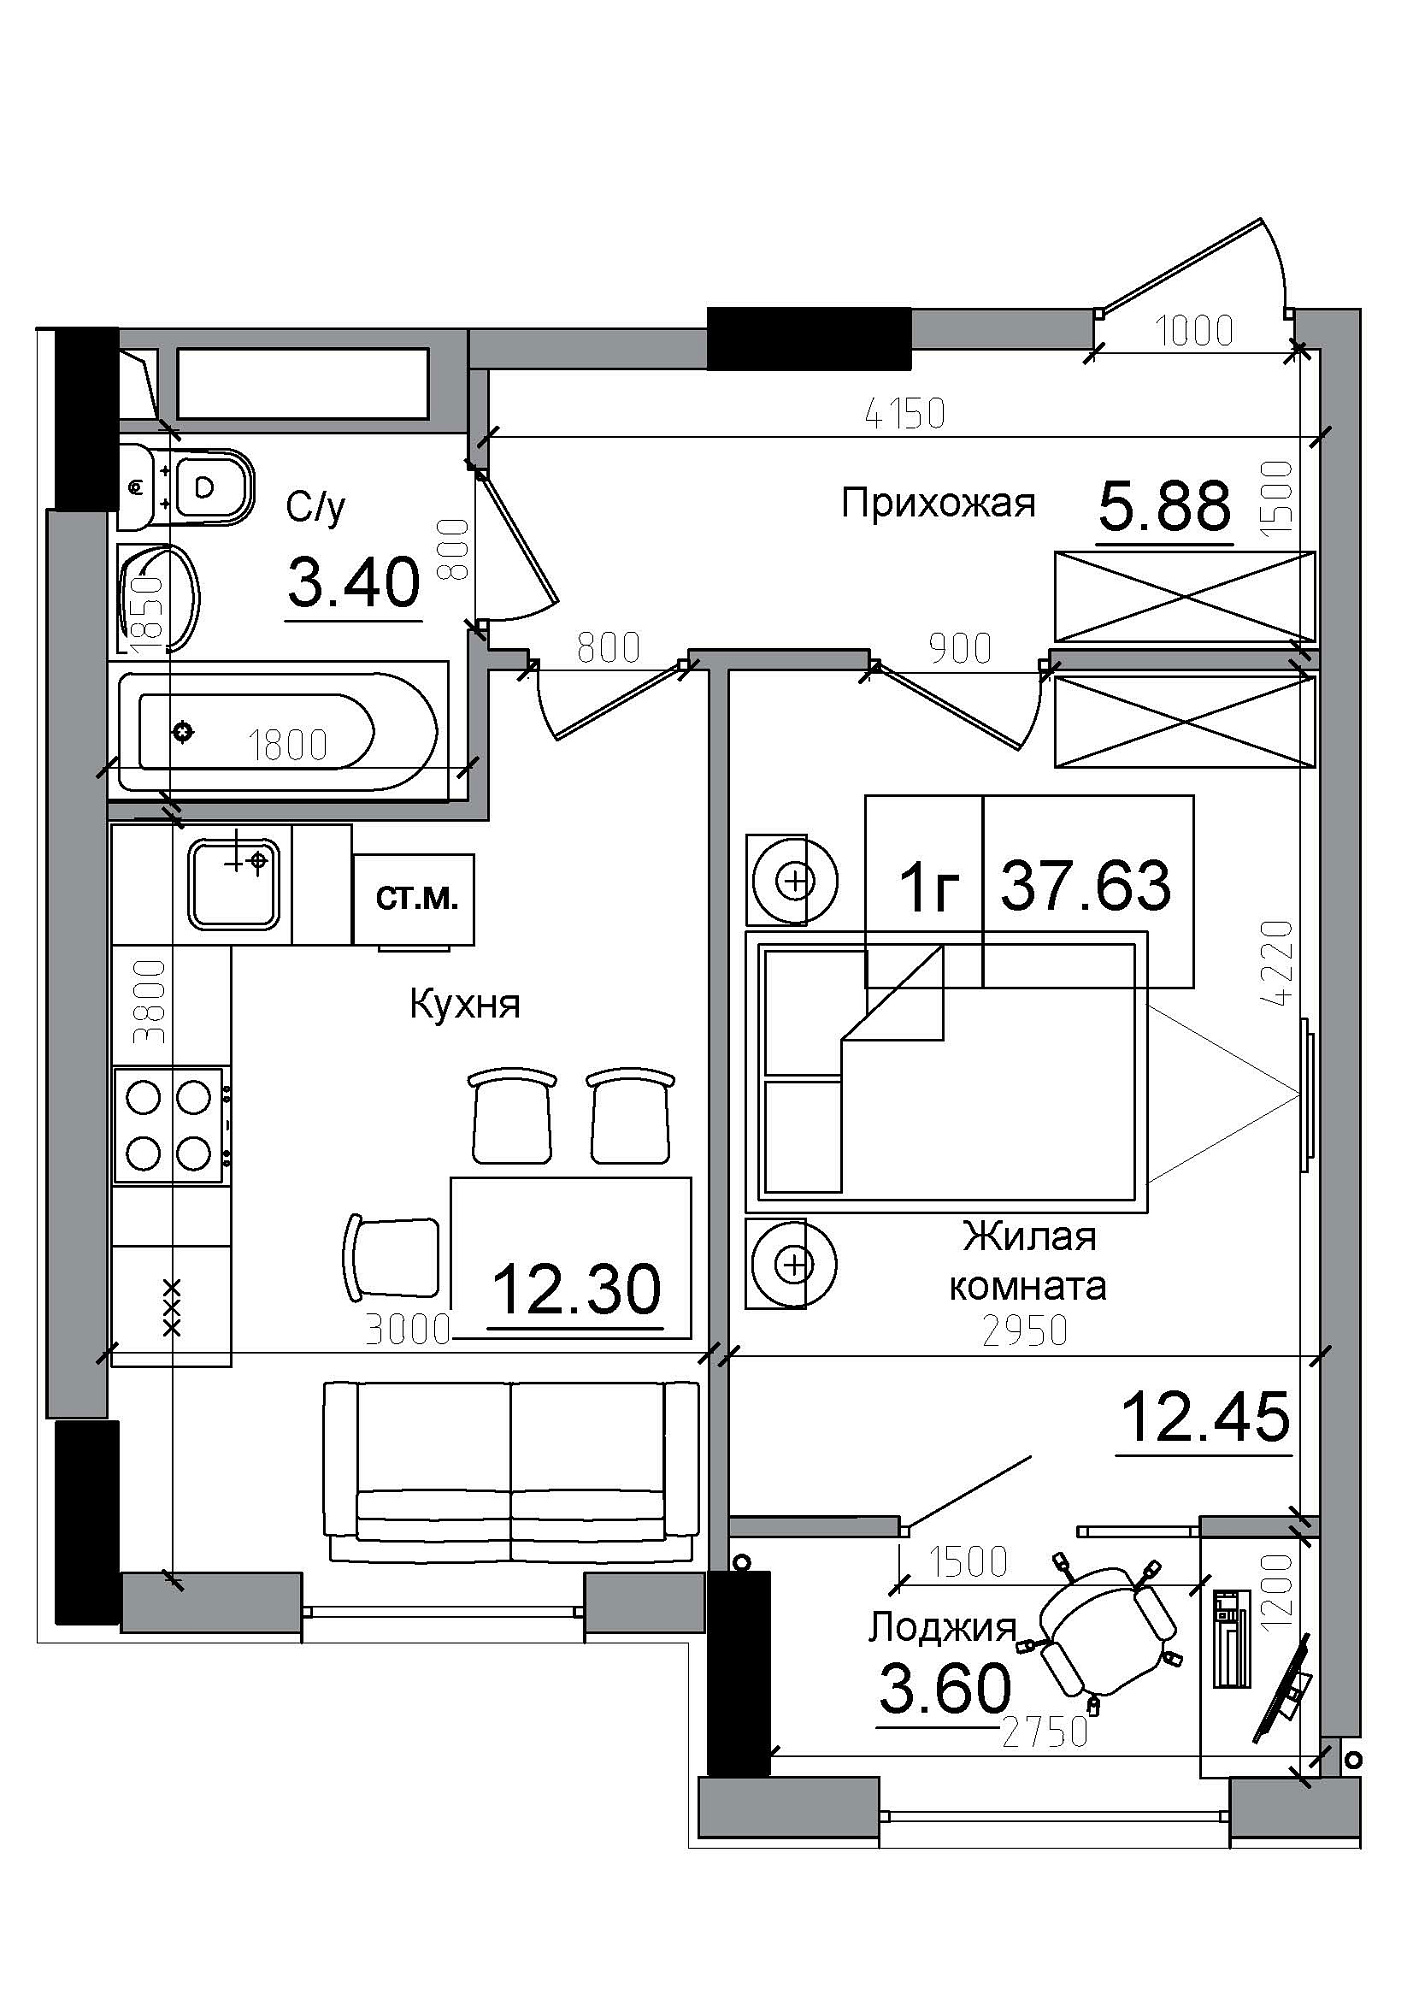 Планування 1-к квартира площею 37.63м2, AB-12-03/00004.